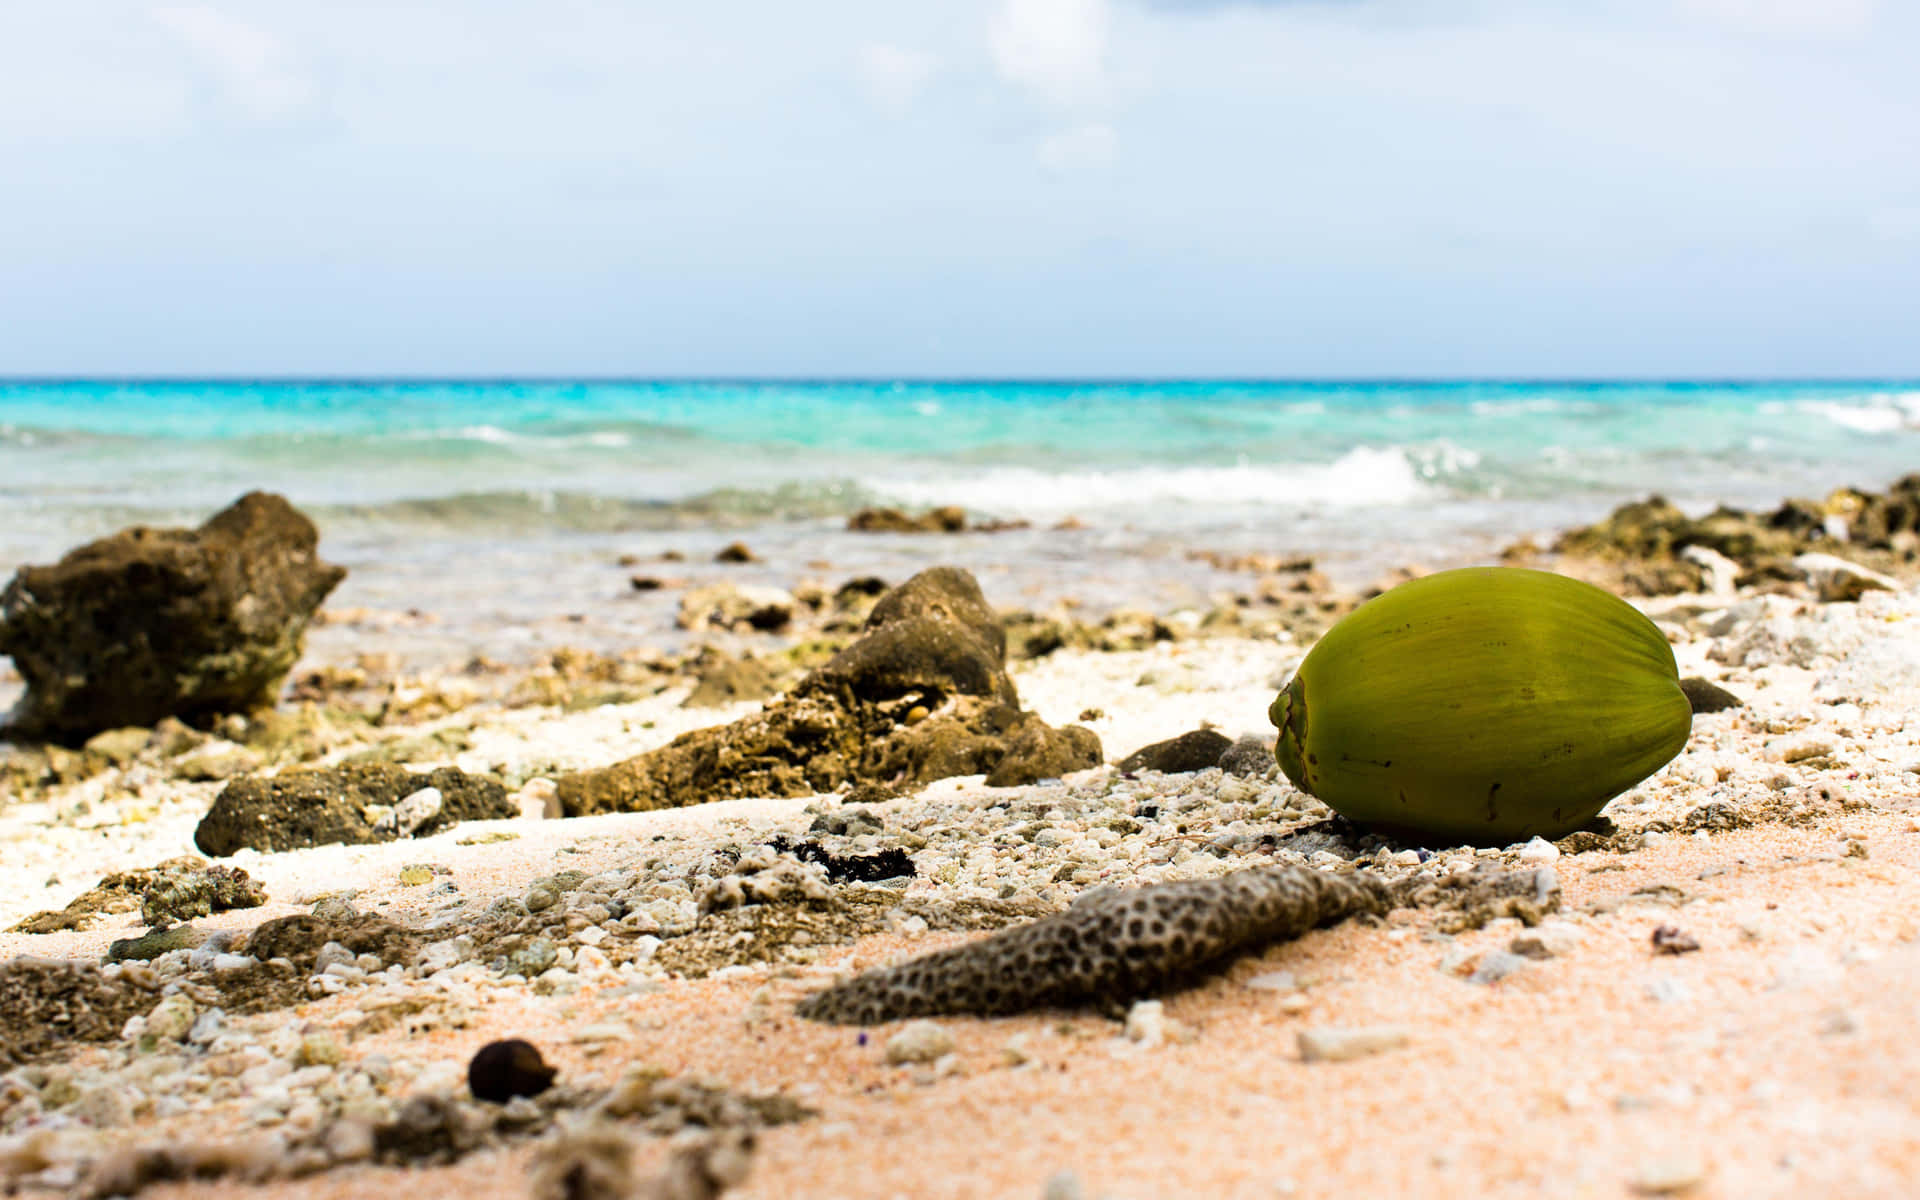 A Coconut On The Beach